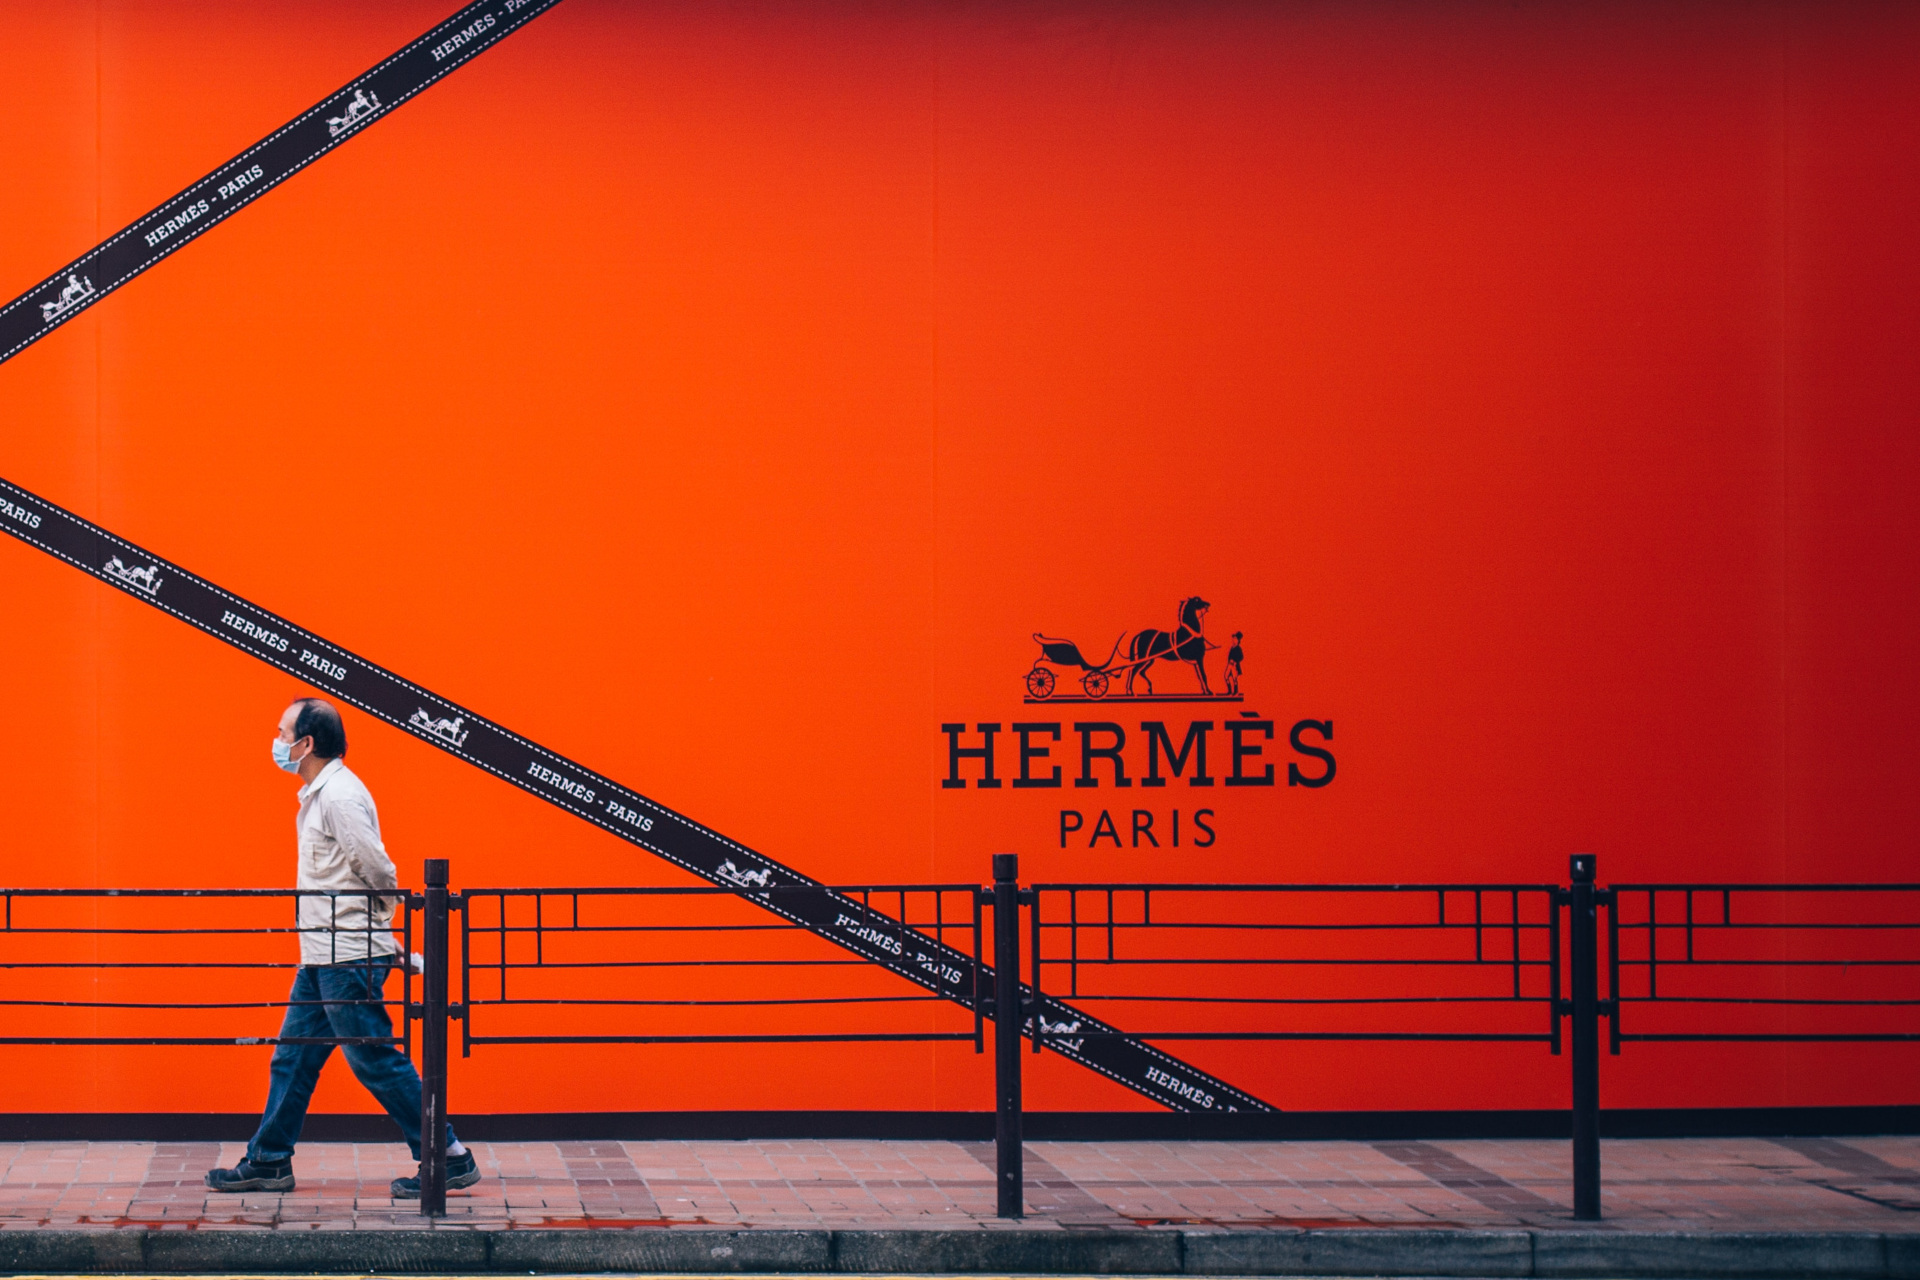 Orange Hermes poster on building